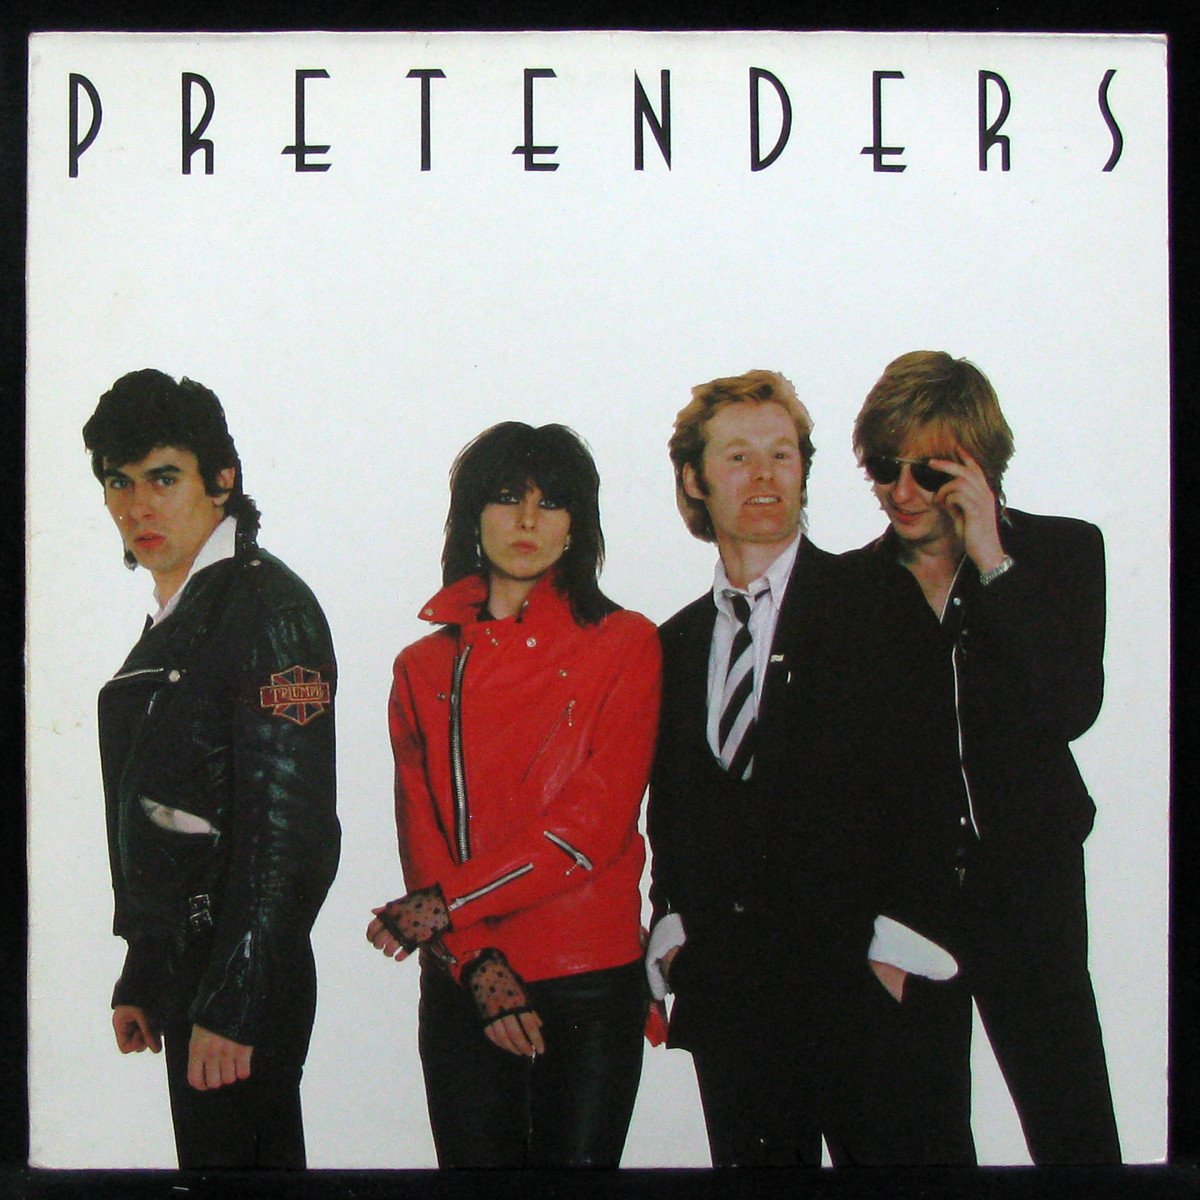 LP Pretenders — Pretenders фото